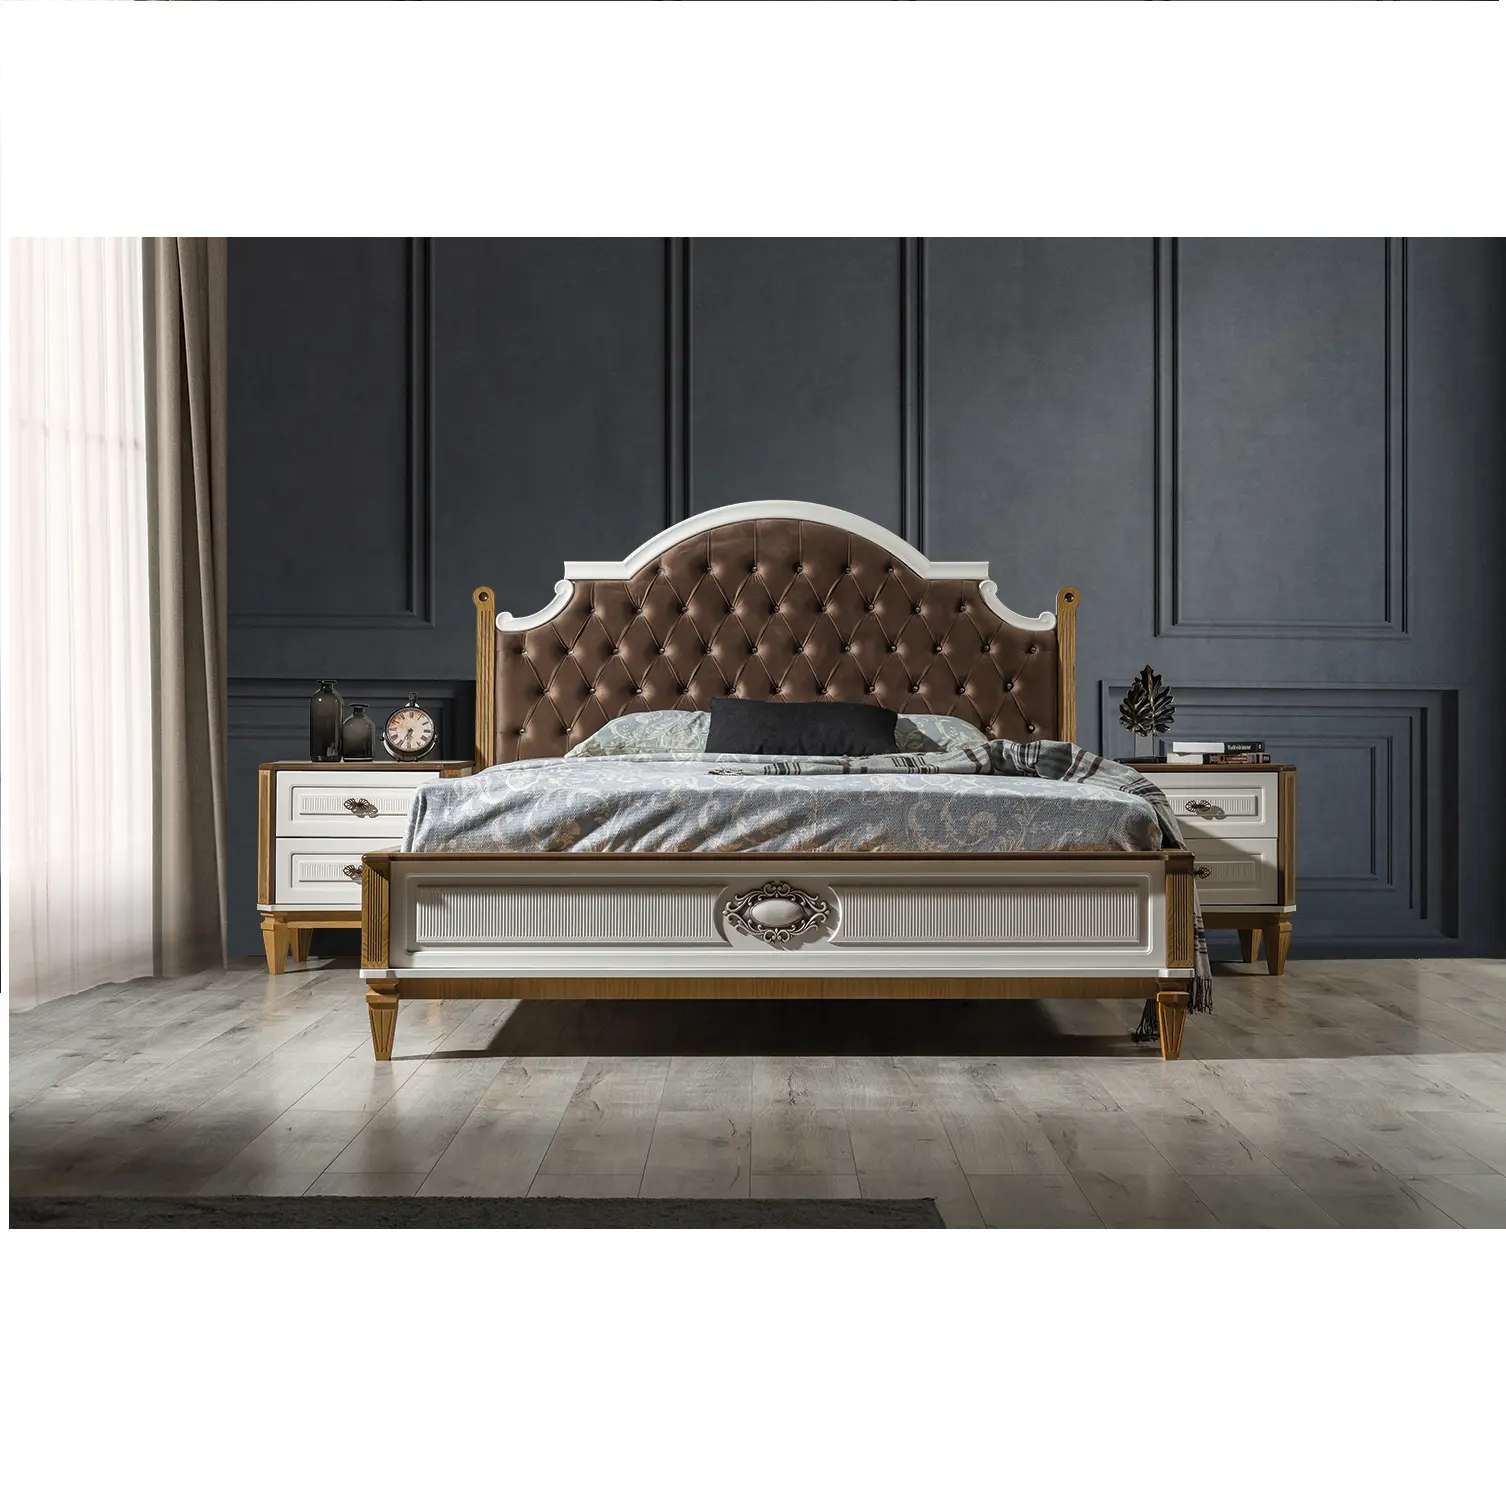 Will Juegos de dormitorio de madera, la mayoría de los juegos cómodos y modernos de alta calidad Juegos de cama de madera de lujo